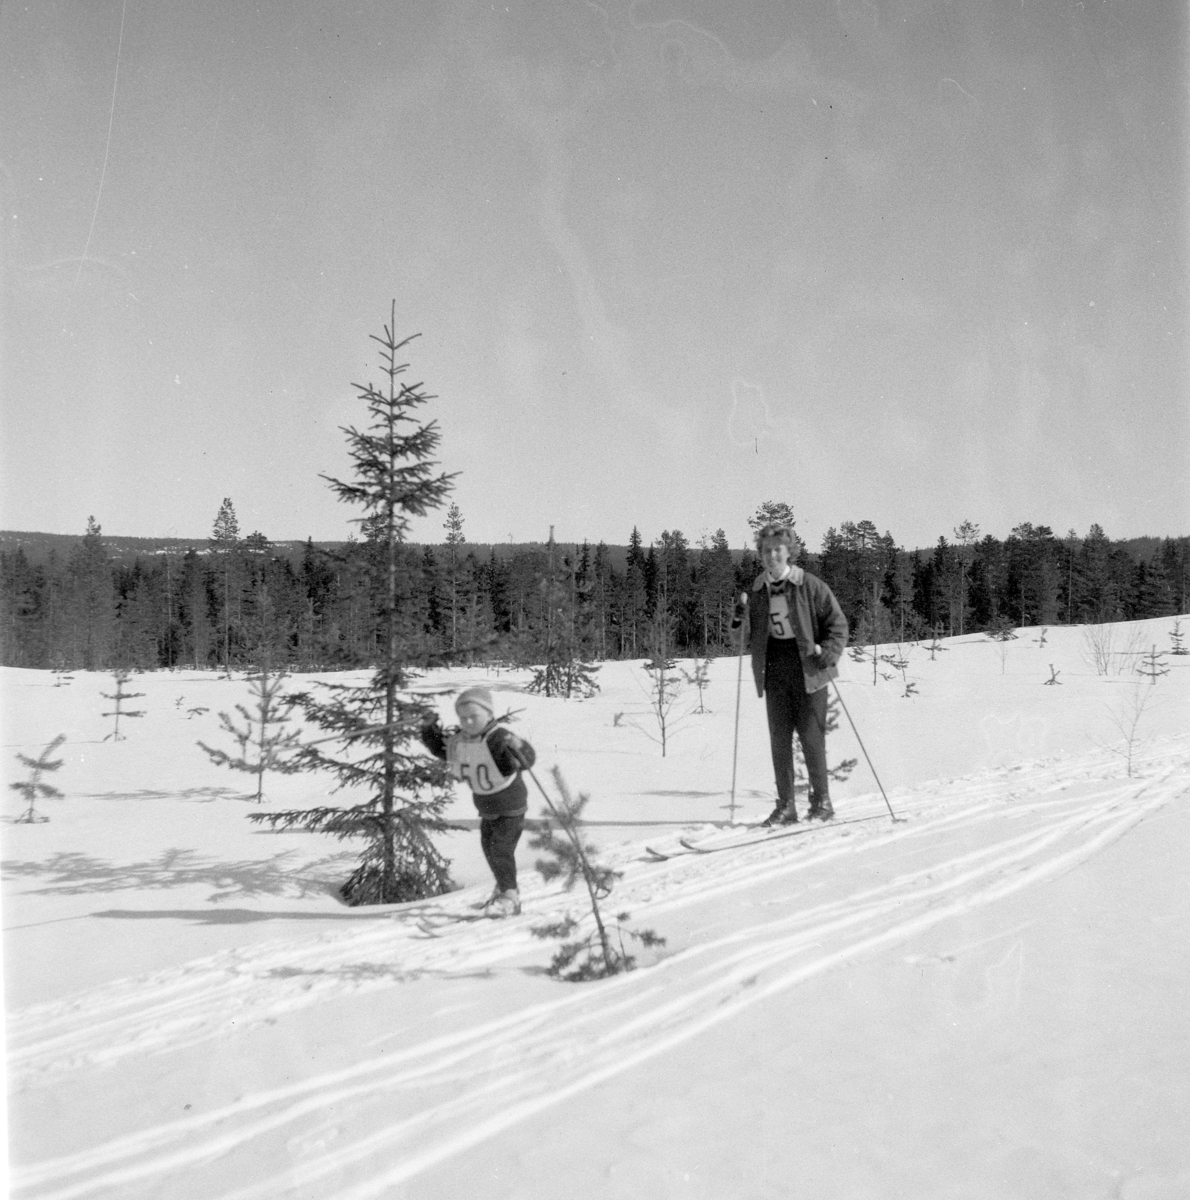 Pilkeskirennet, konkurranse med både skirenn og pilke konkurranse. Moelven. Vinter, snø. Moelven foto 1970. 